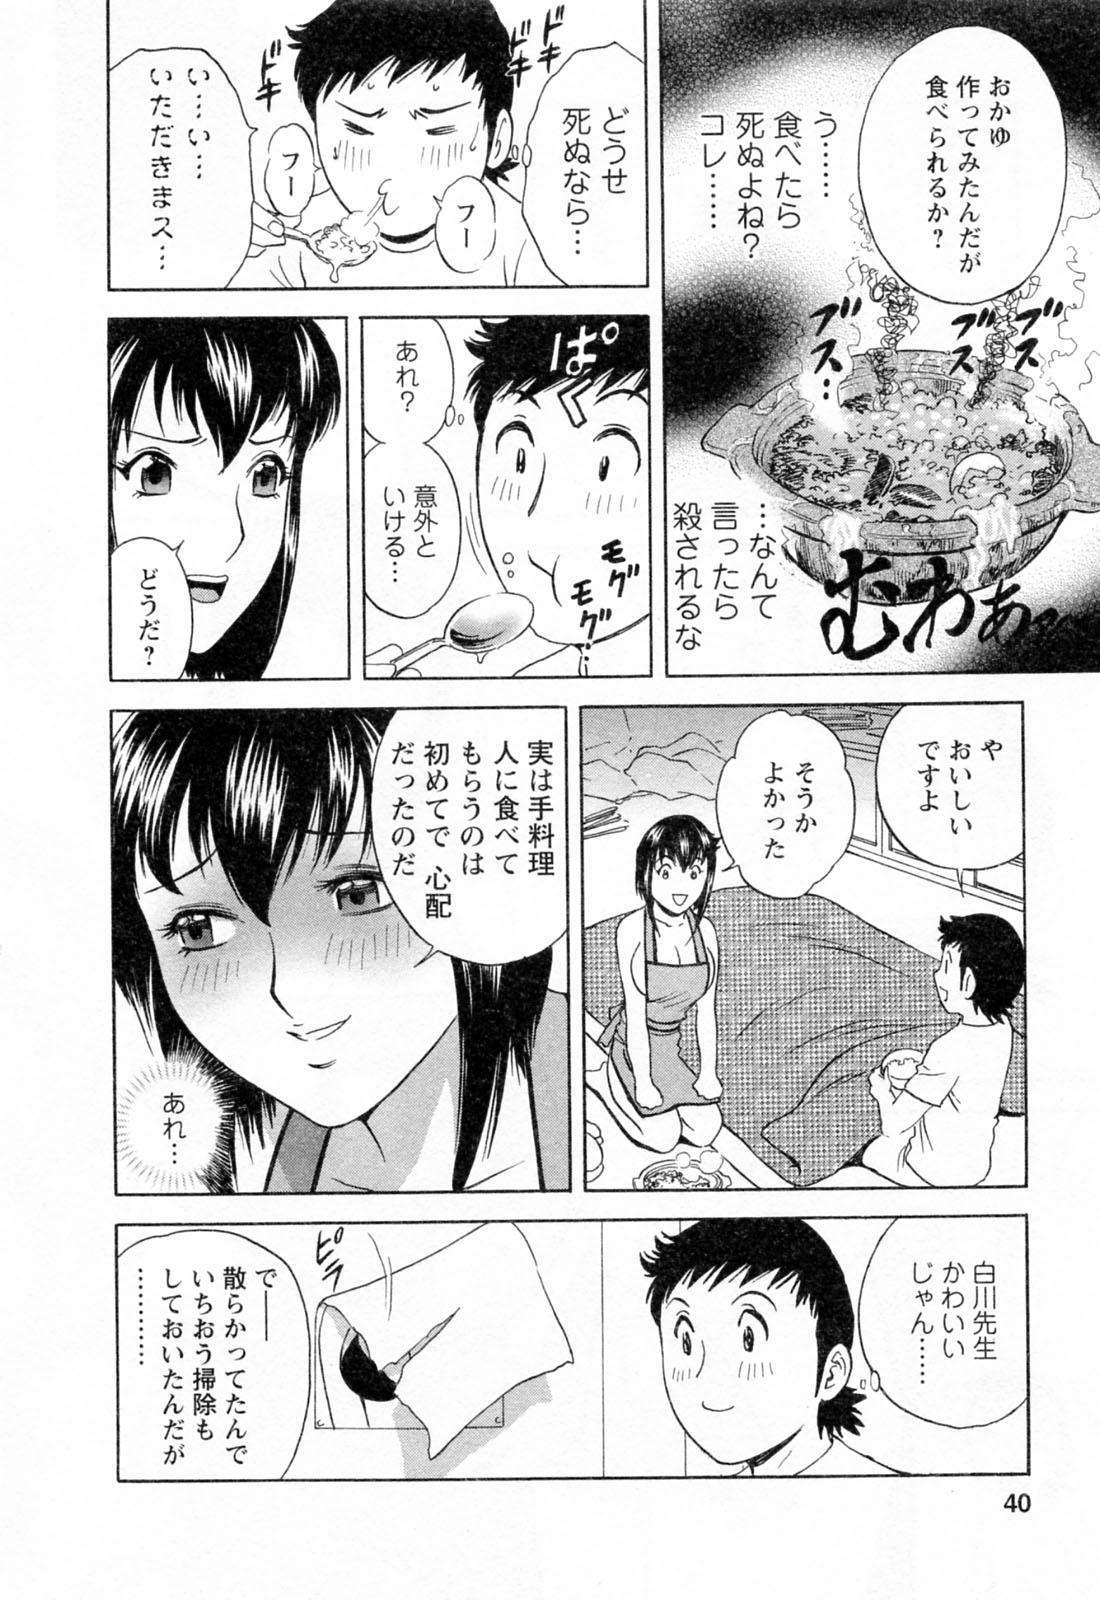 [Hidemaru] Mo-Retsu! Boin Sensei (Boing Boing Teacher) Vol.4 41